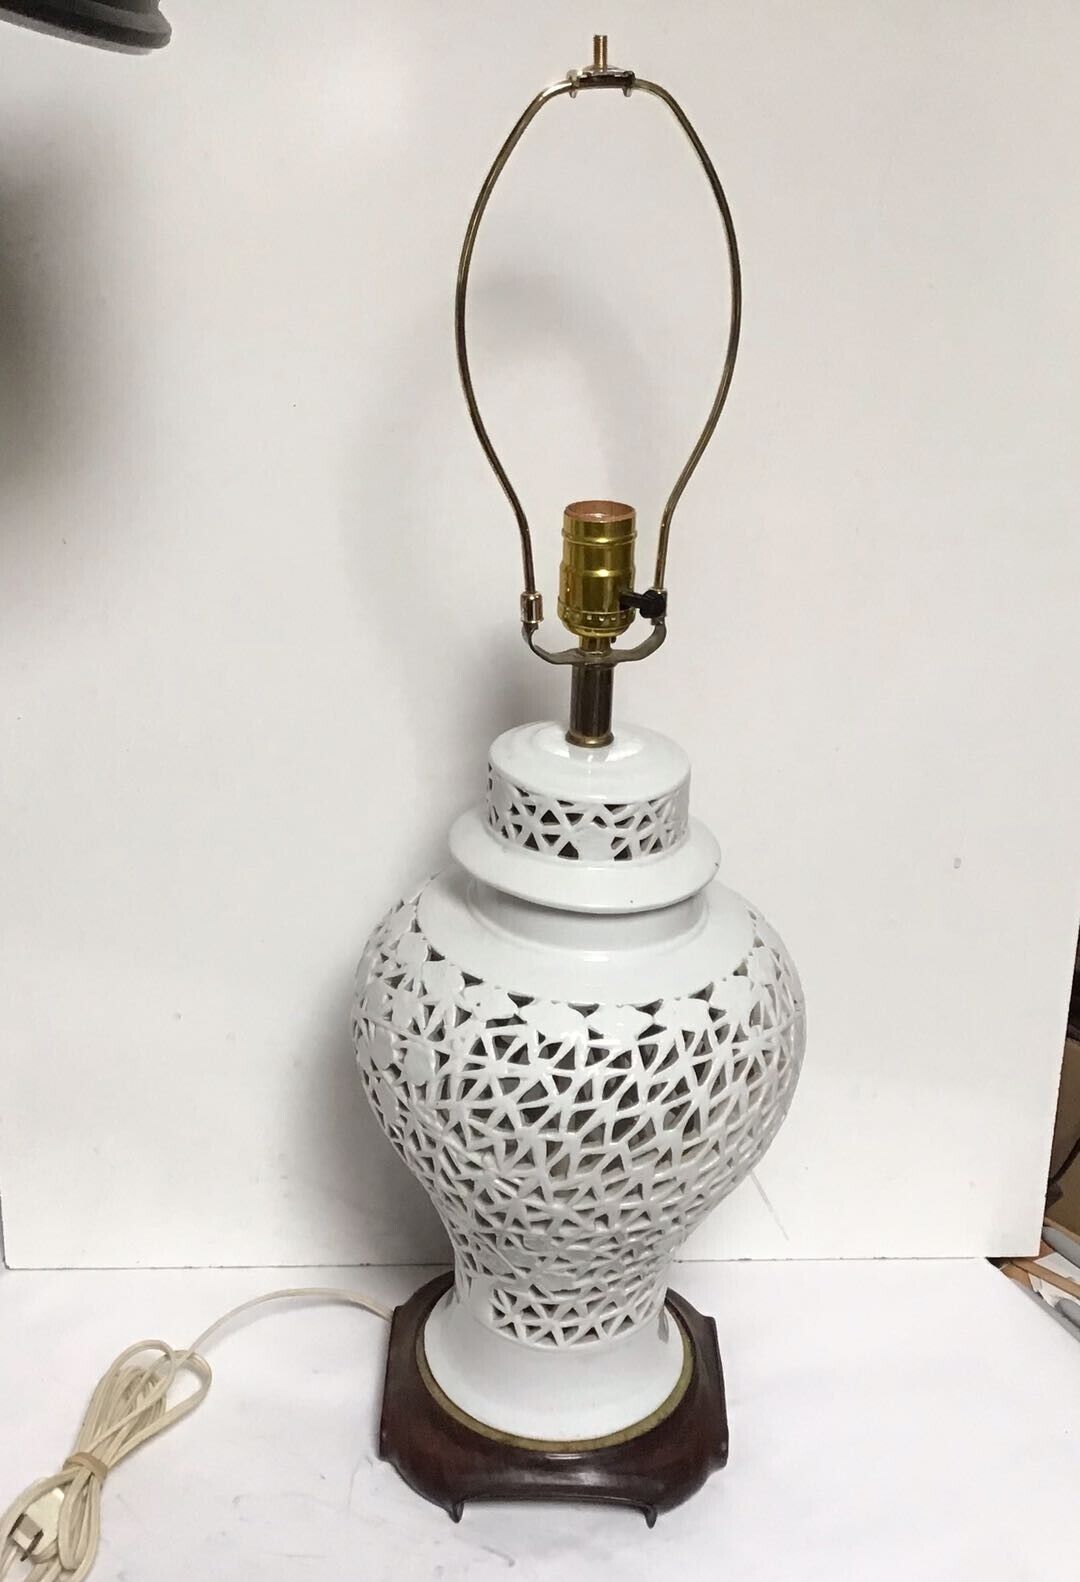 Z1 VINTAGE CHINESE ANTIQUE MID 20'S CENTURY WHITE PORCELAIN HOLLOW ART DESK LAMP